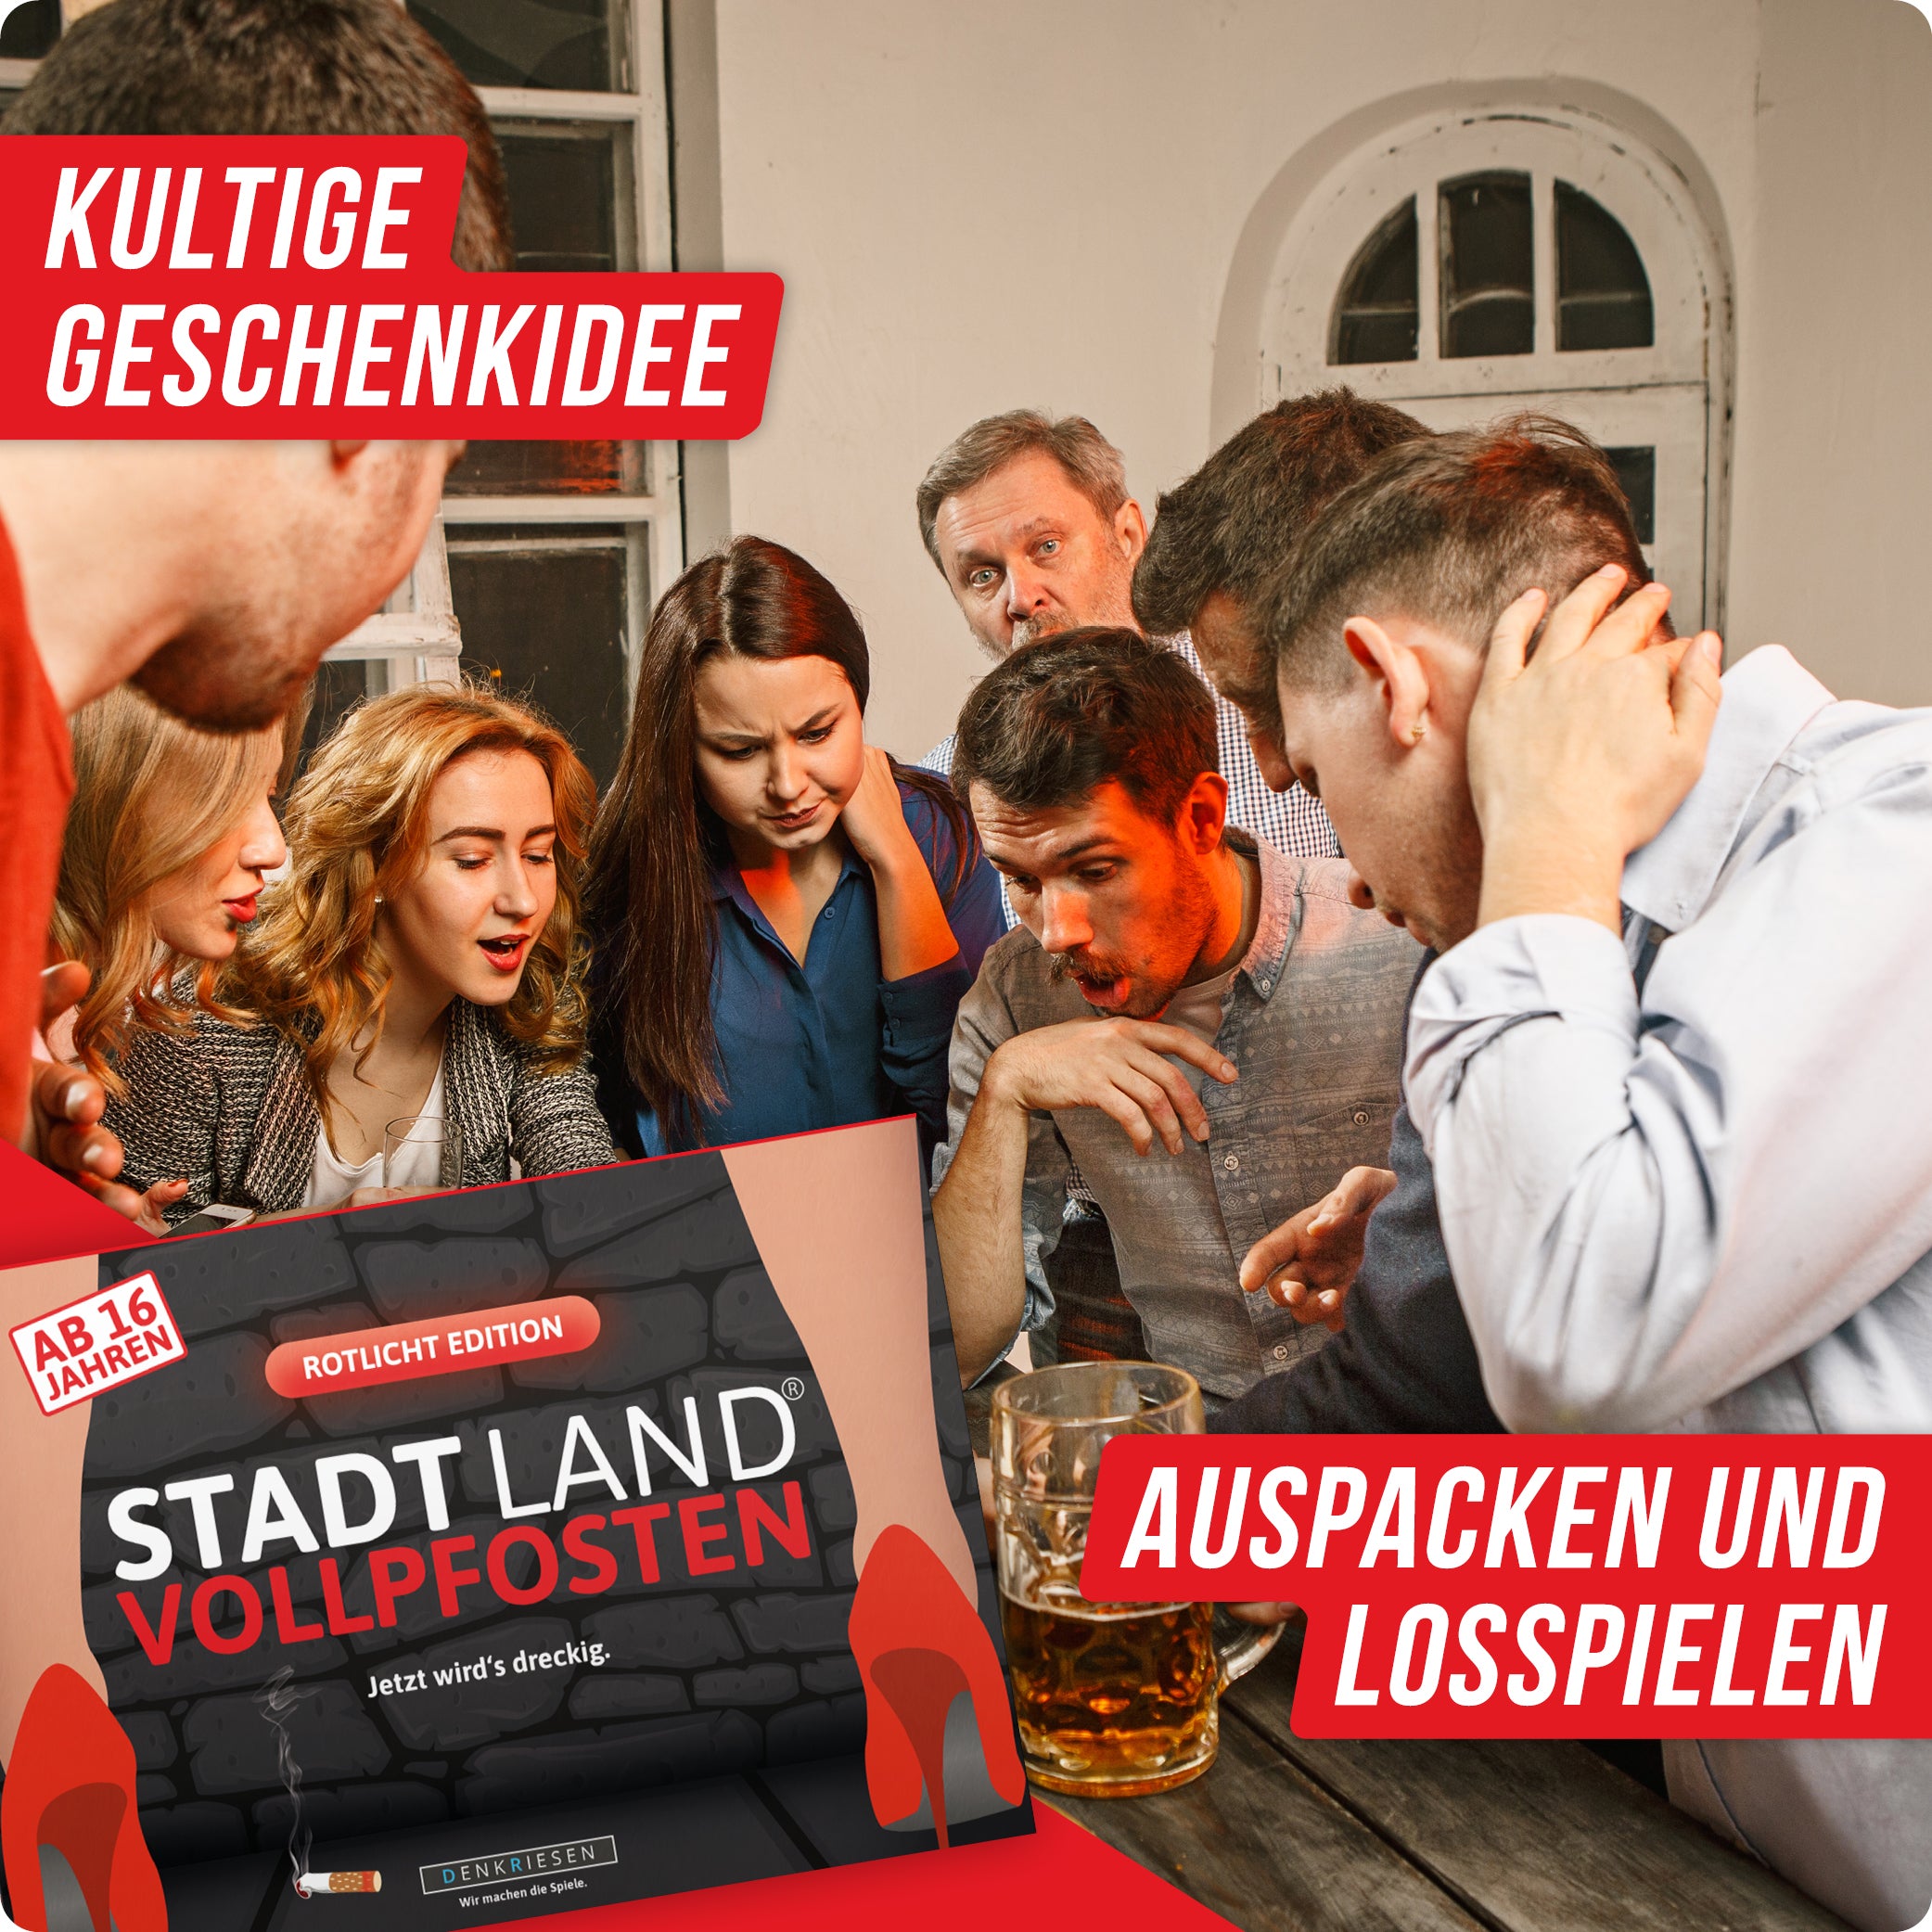 Stadt Land Vollpfosten® Rotlicht Edition – "Jetzt wird's dreckig." | A4 Spielblock